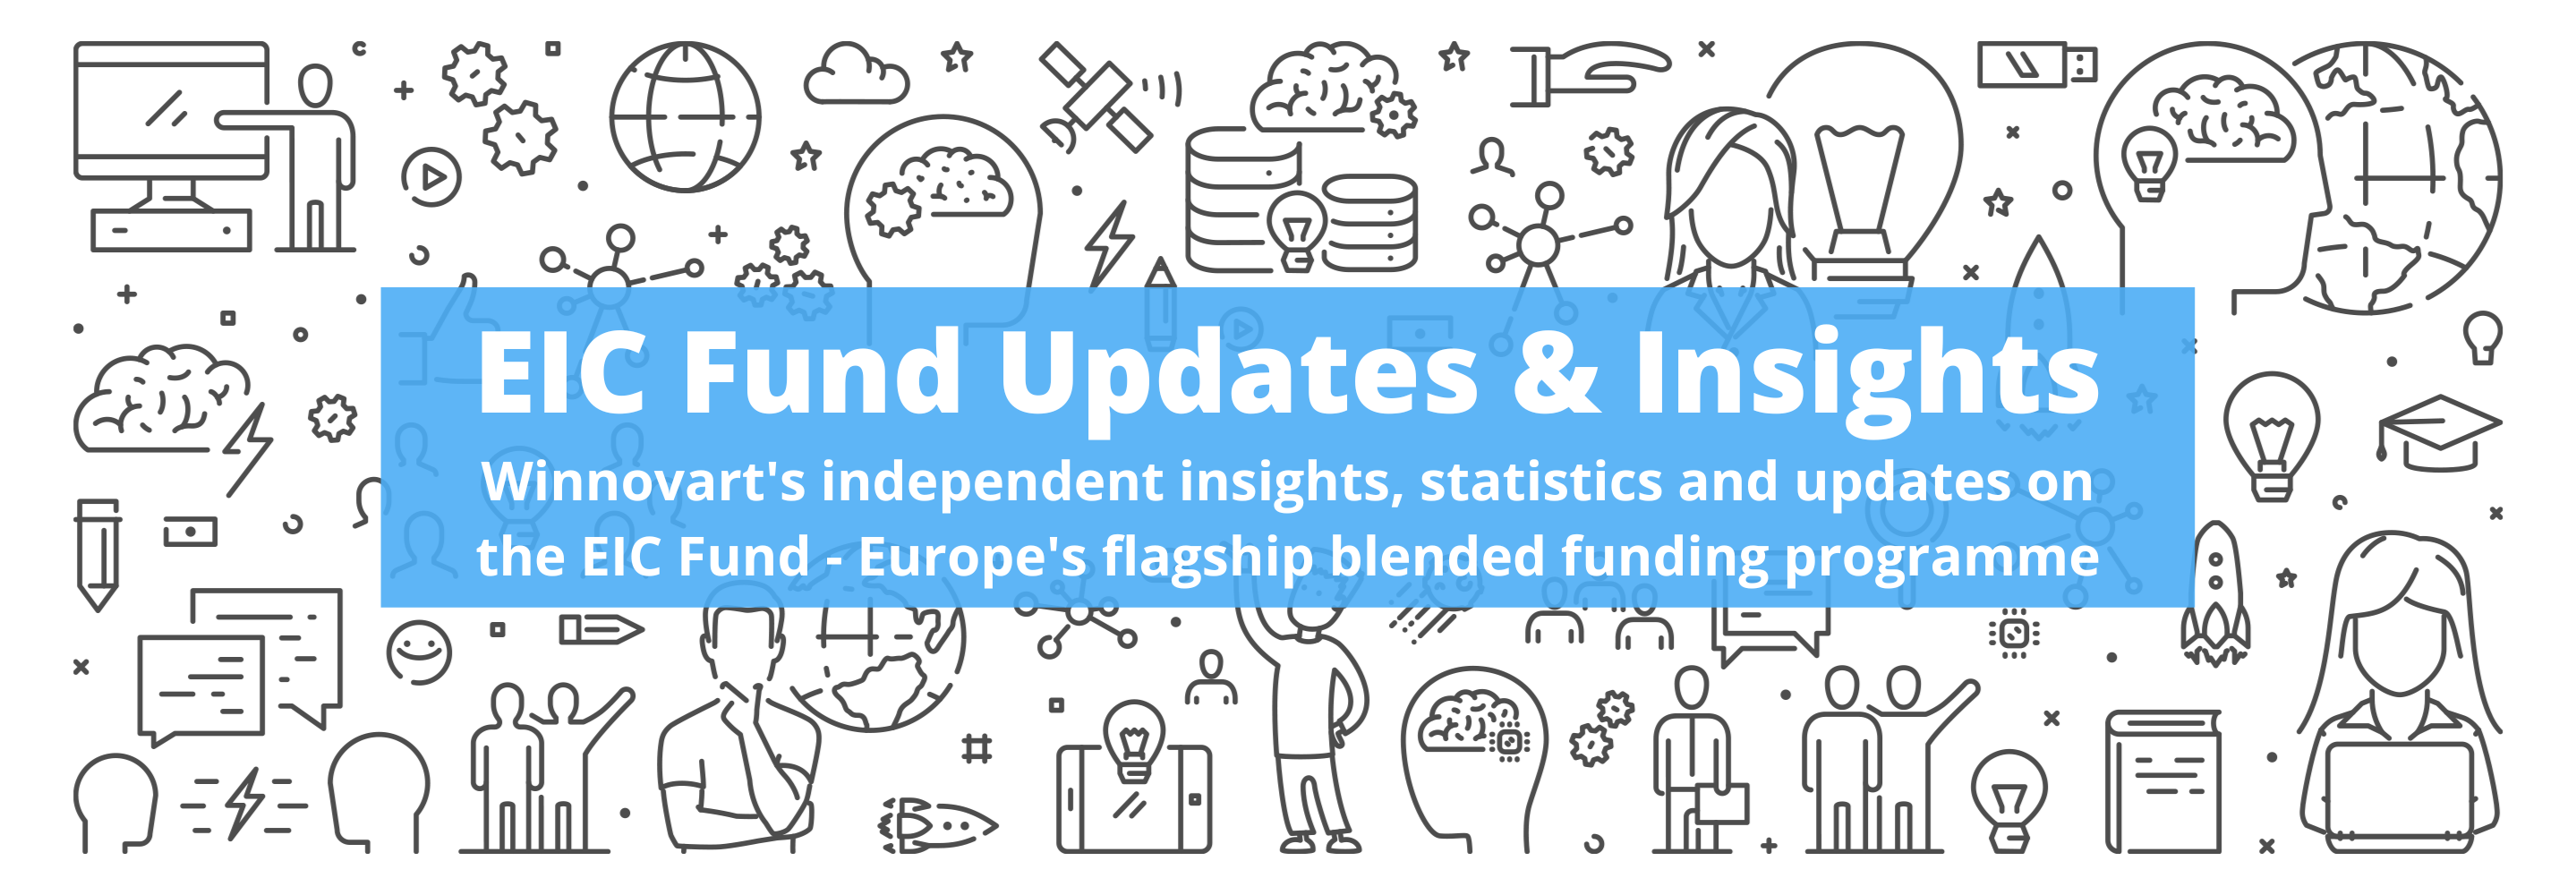 EIC Fund - Updates & Insights (Bold)